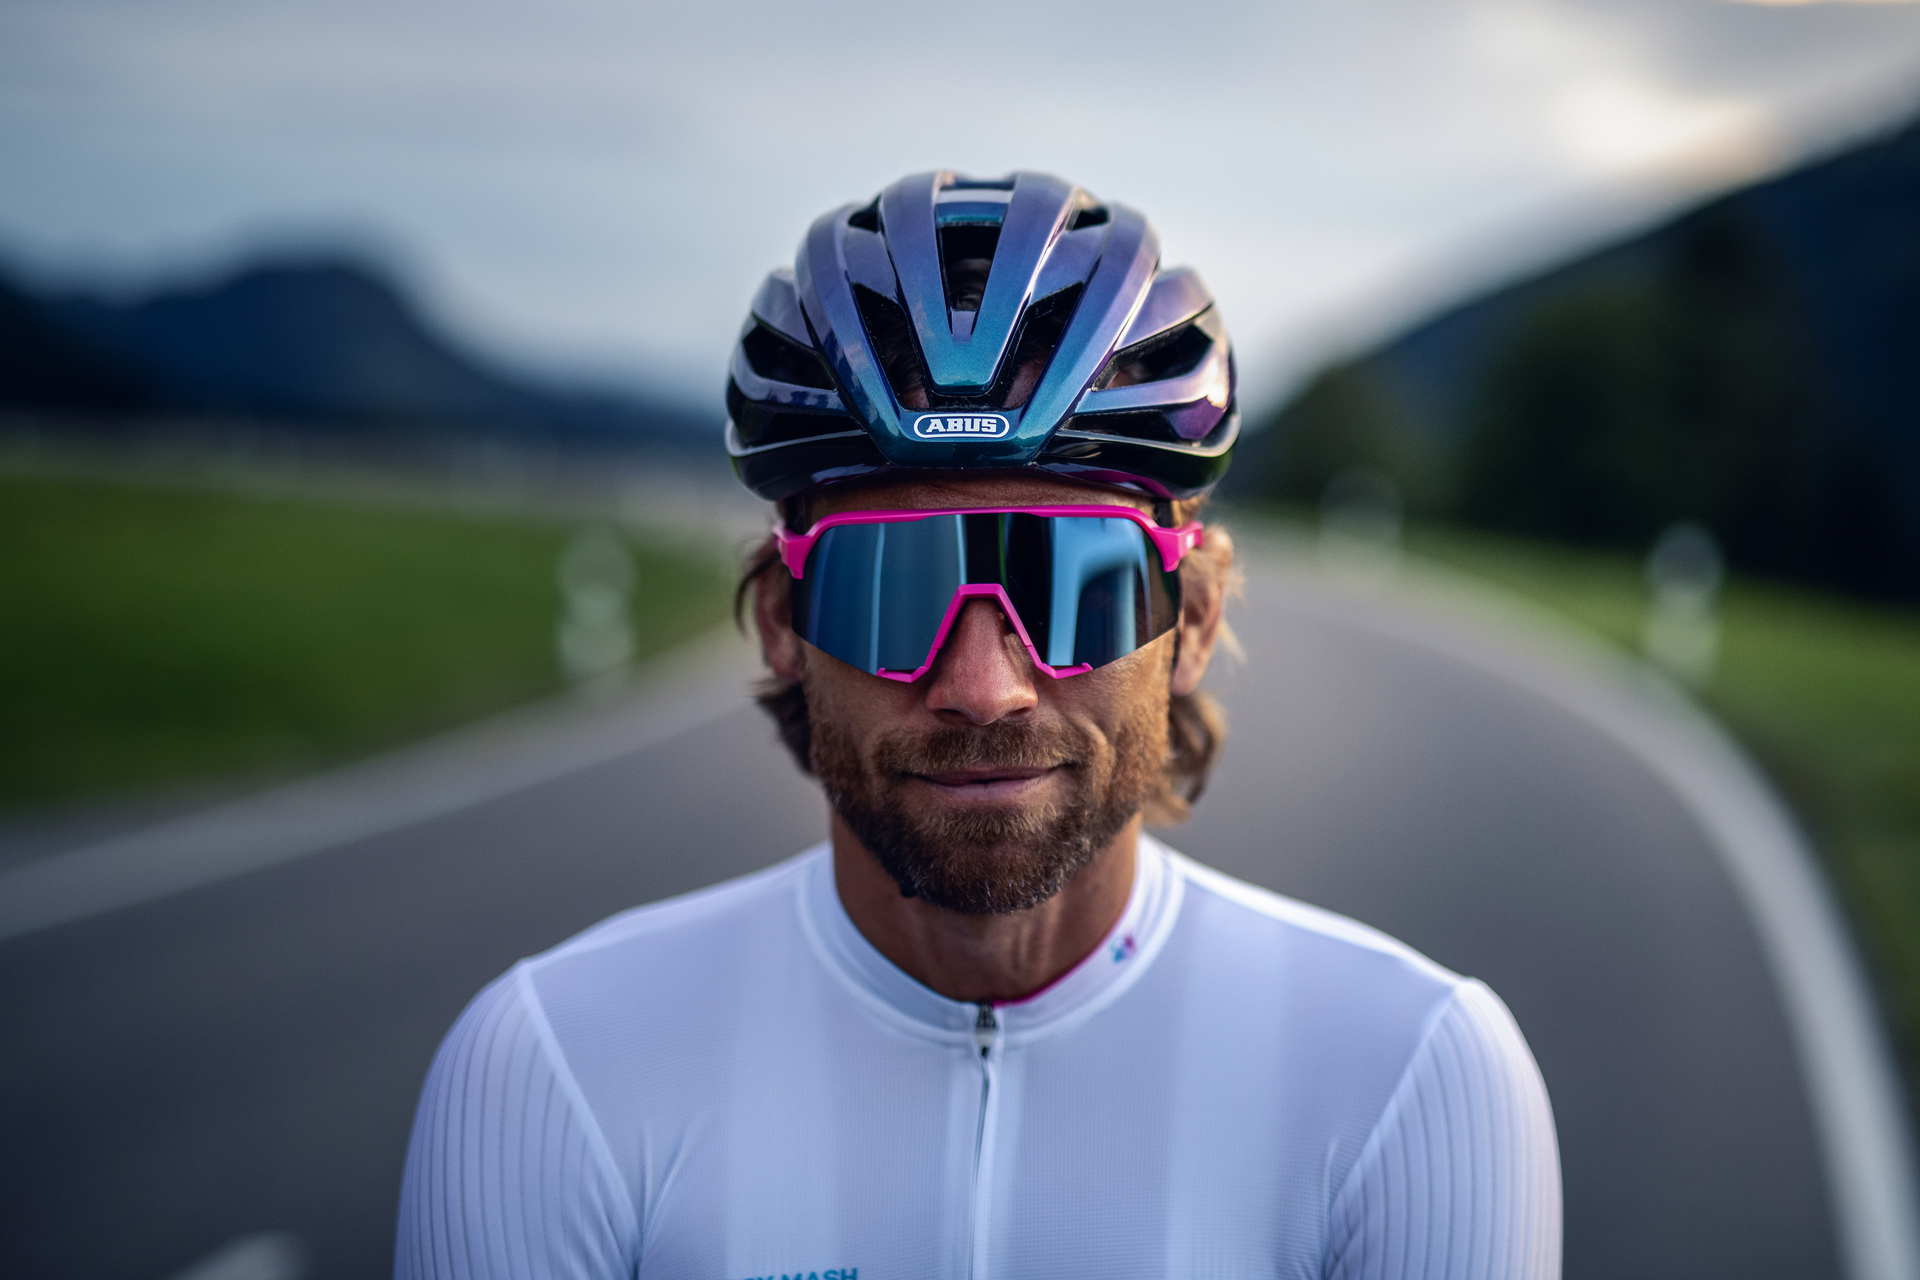 Bike helmet | StormChaser | for bike racing | ABUS